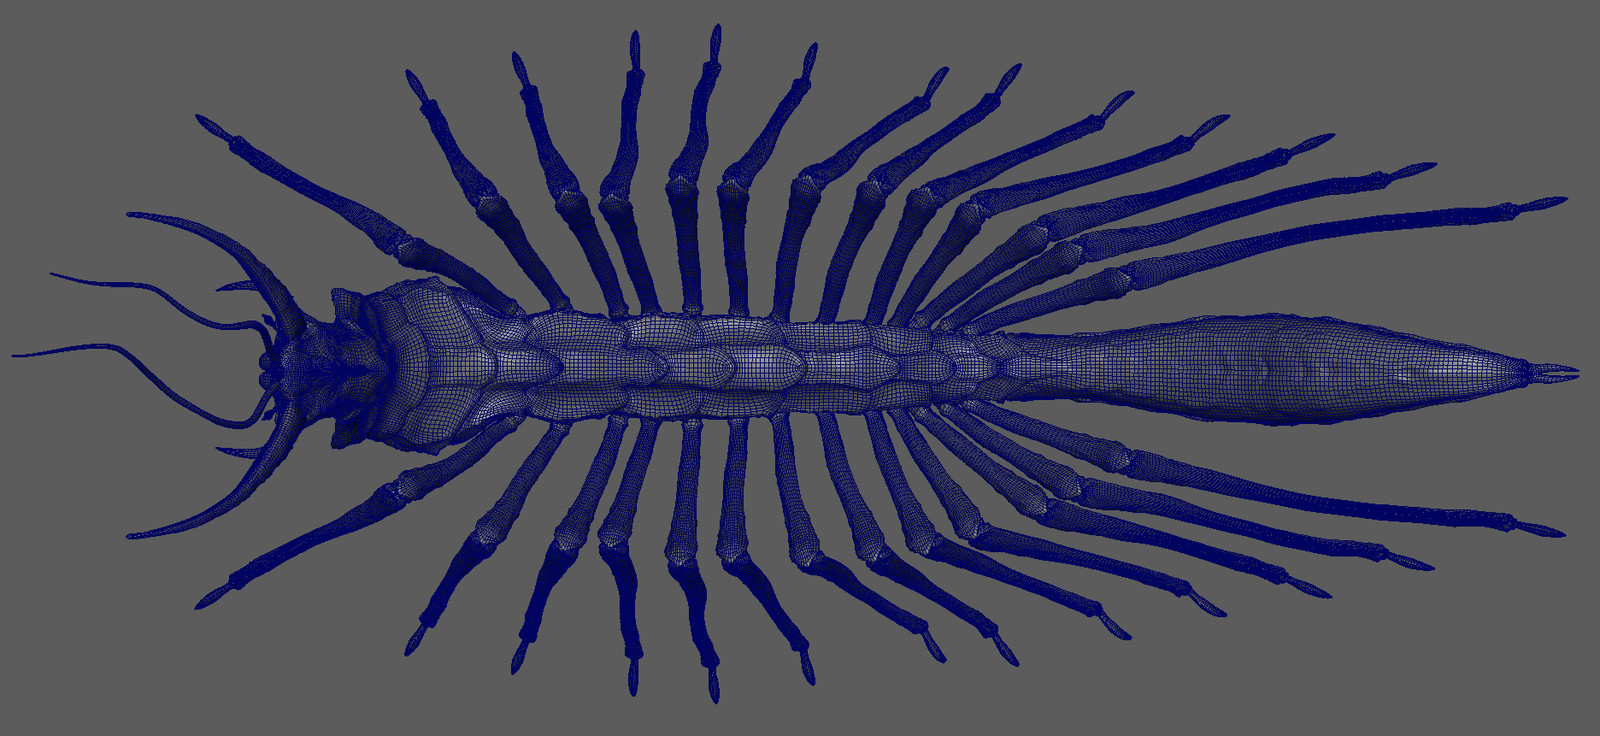 centipede topology